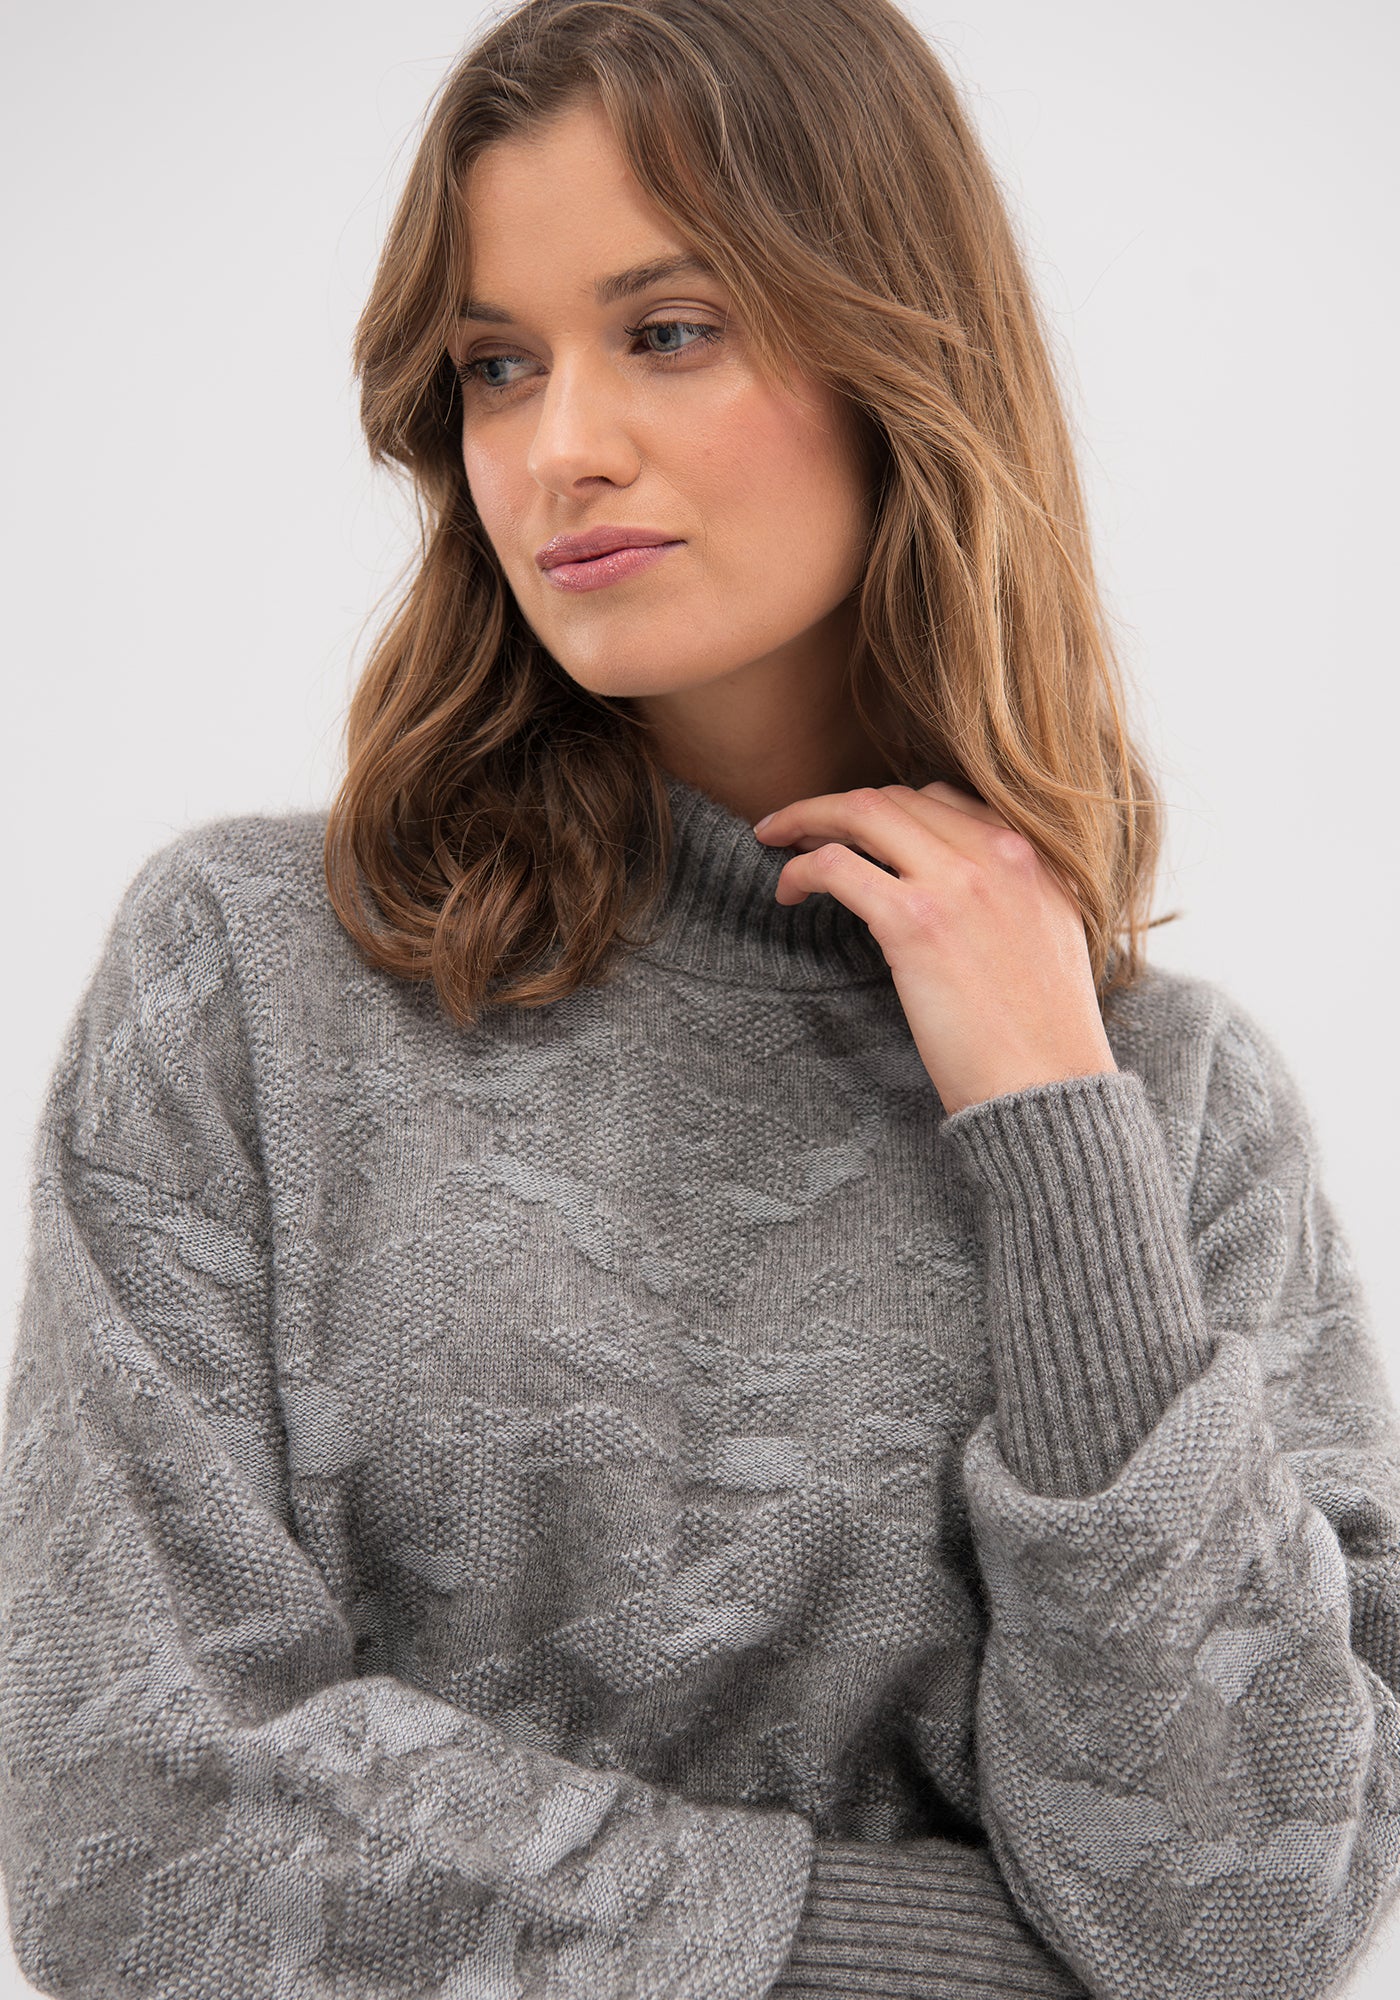 Anahera Sweater